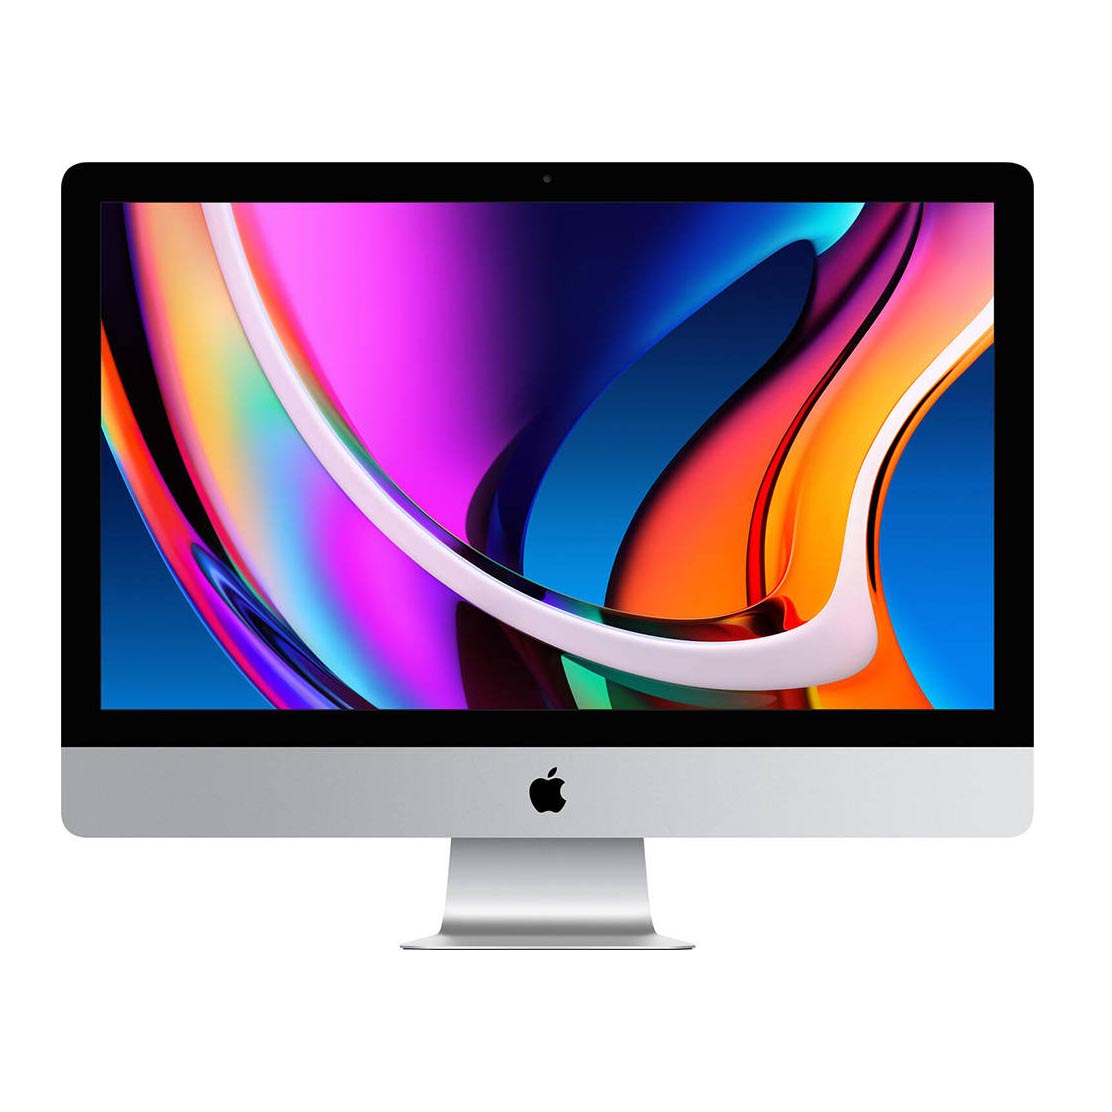 Моноблок Apple iMac 27'' (2020), 8Gb/256Gb, серебристый, английская/арабская клавиатура наклейка для крепления матрицы imac 27 a1419 late 2012 mid 2015